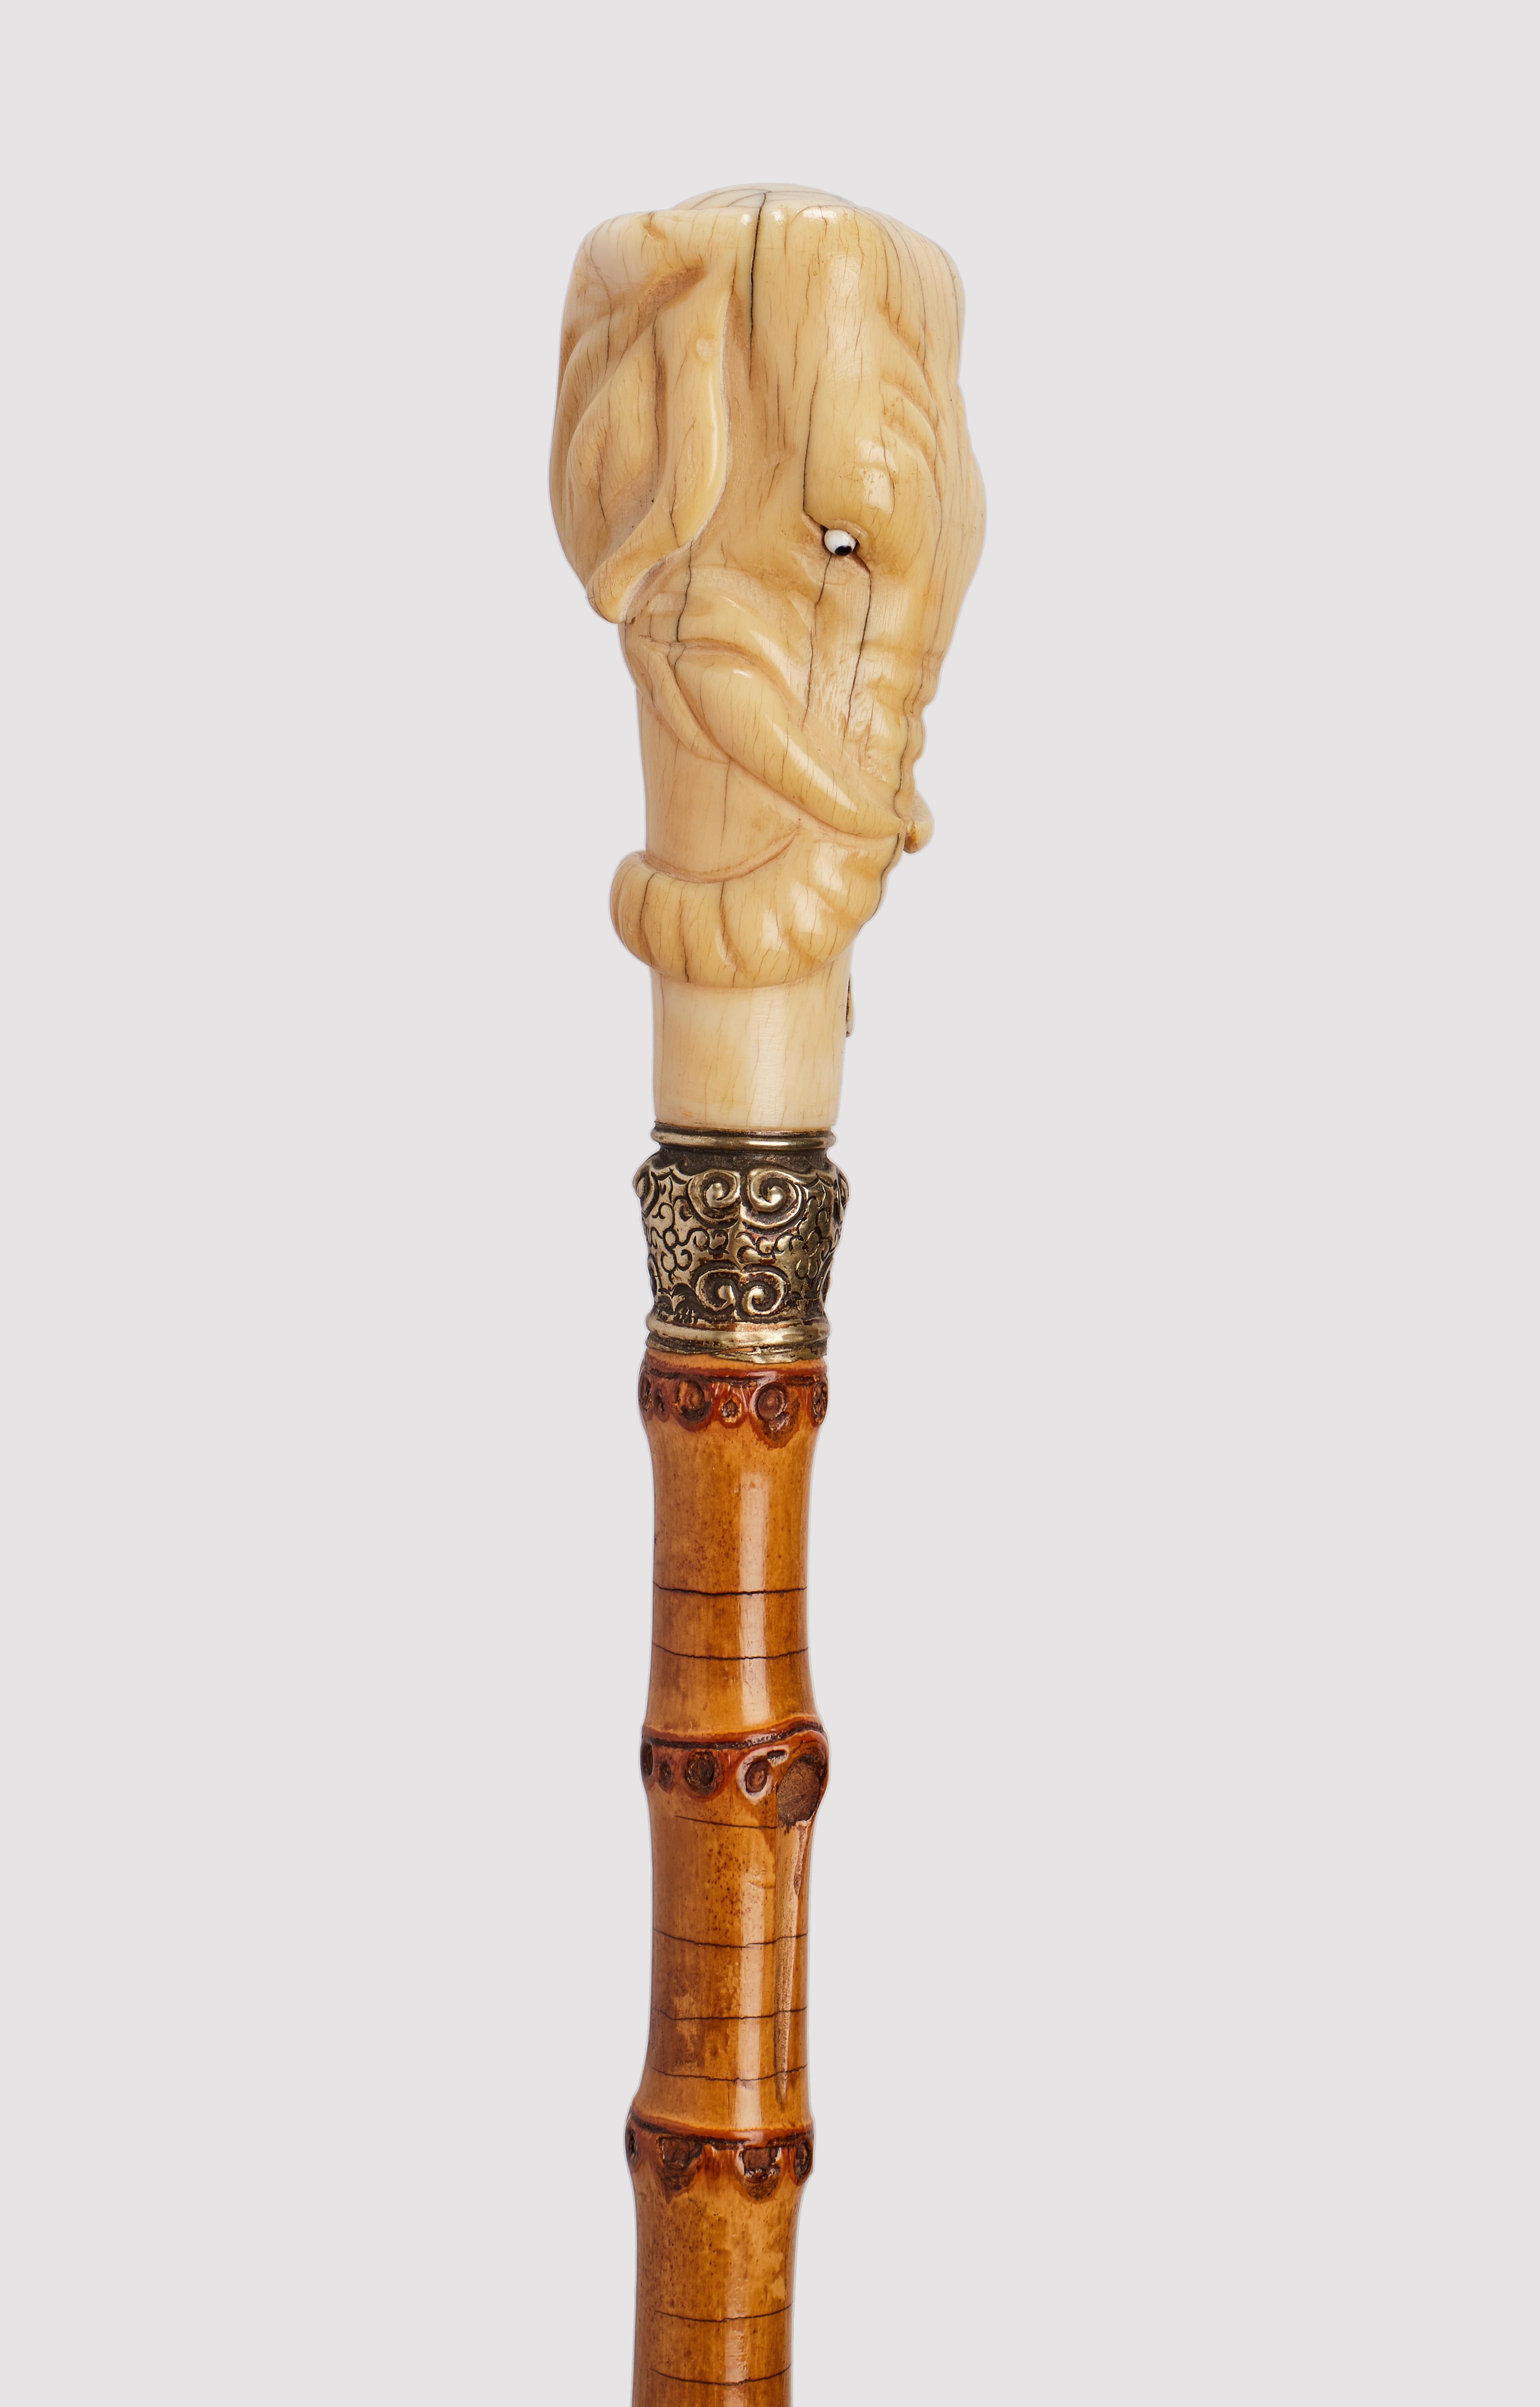 Canne : manche en ivoire sculpté représentant une tête d'éléphant, avec un tronc torsadé tout autour. Anneau en argent doré. Manche en bois de bambou. Horn et virole en fer. Royaume-Uni vers 1880.                                                     